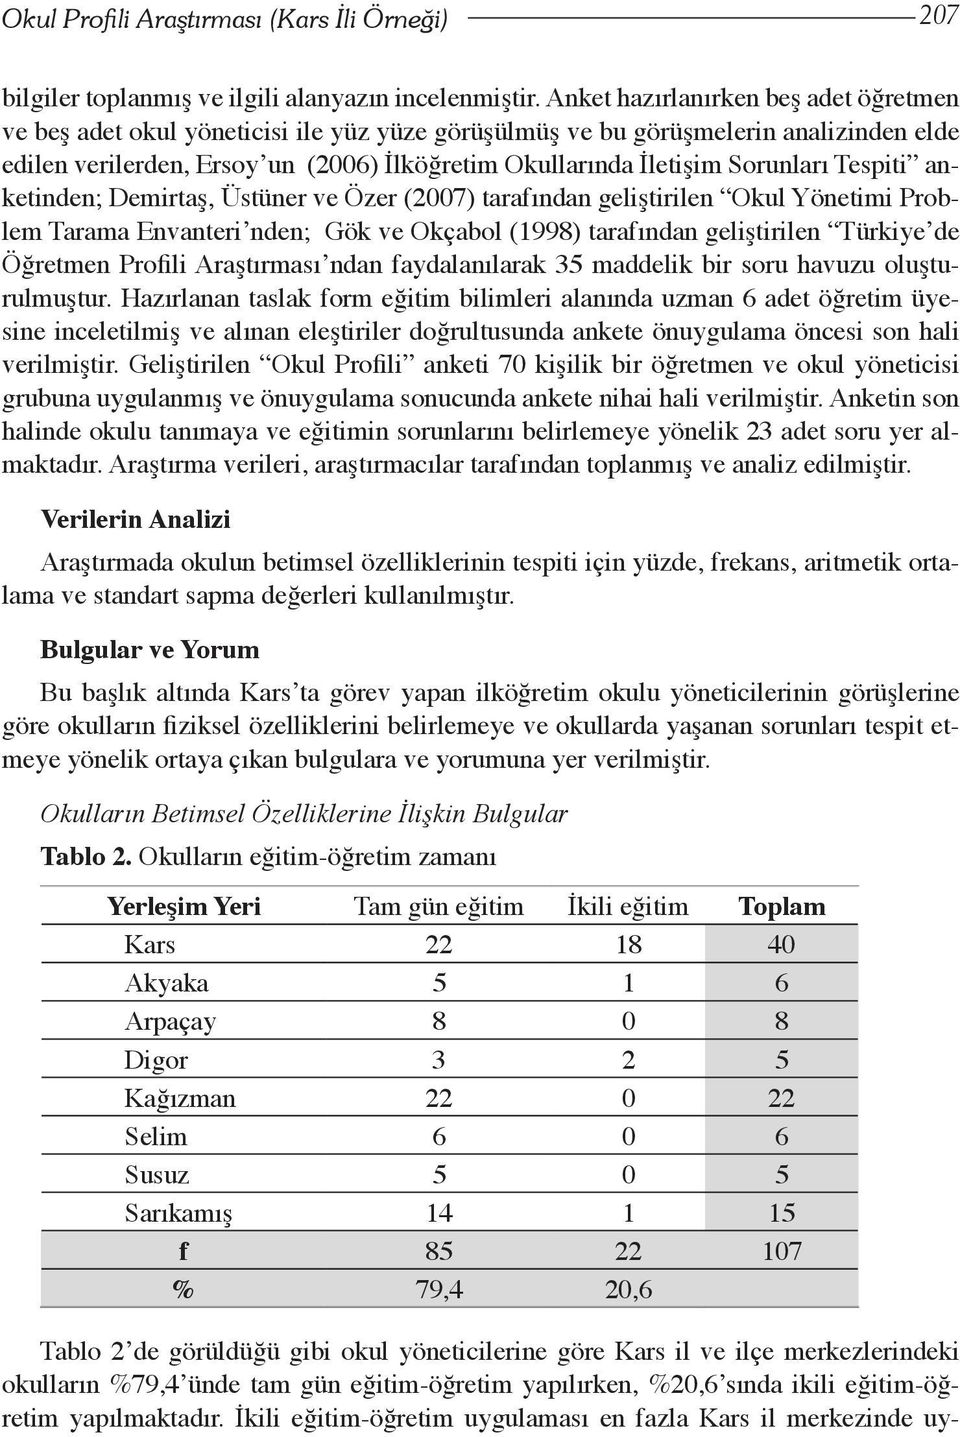 Sorunları Tespiti anketinden; Demirtaş, Üstüner ve Özer (2007) tarafından geliştirilen Okul Yönetimi Problem Tarama Envanteri nden; Gök ve Okçabol (1998) tarafından geliştirilen Türkiye de Öğretmen